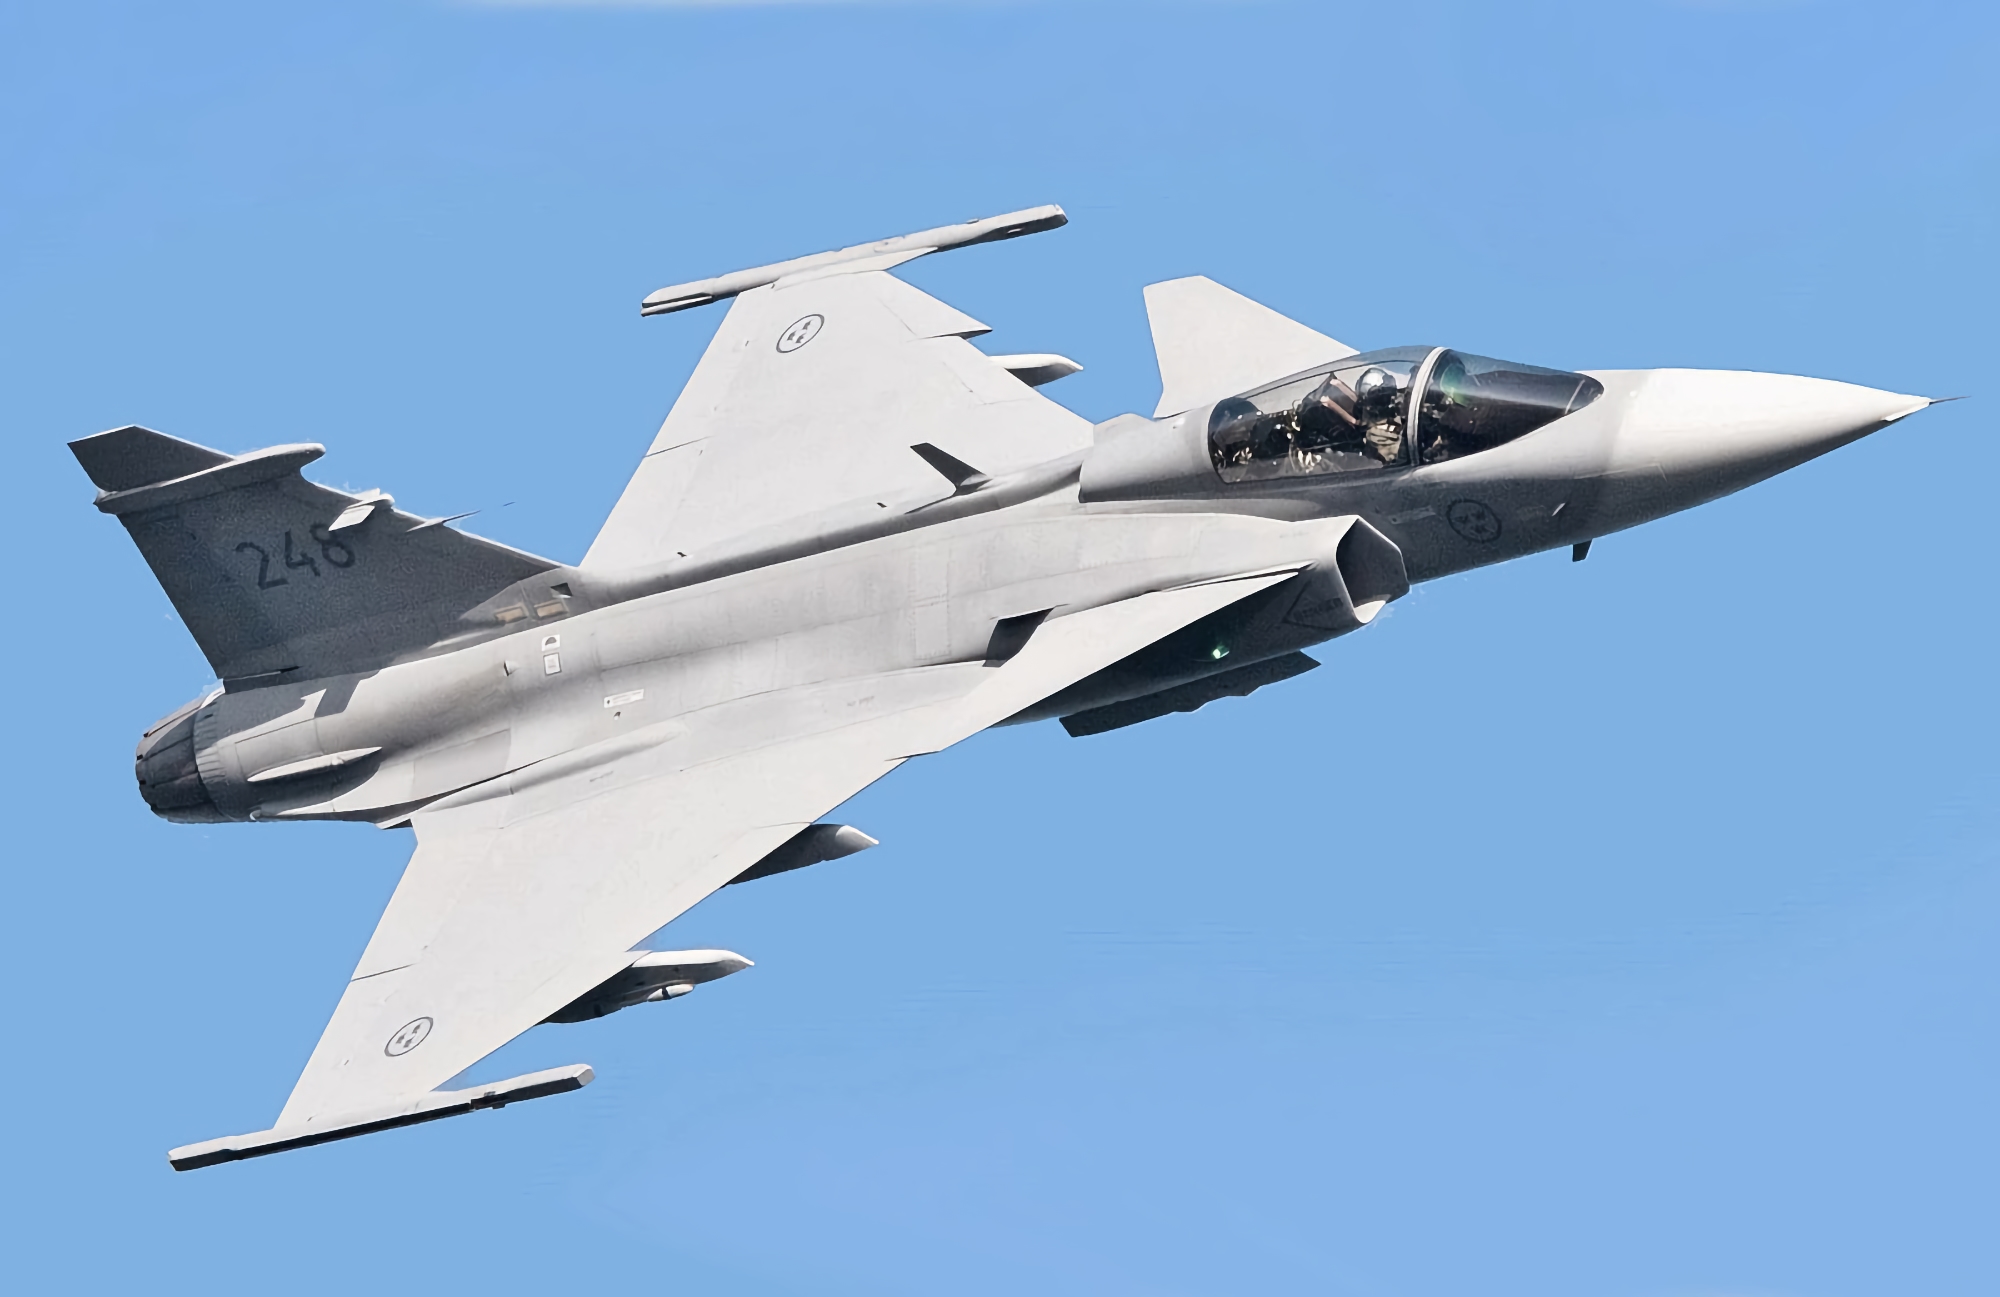 Stany Zjednoczone rozważają możliwość przeniesienia europejskich myśliwców na Ukrainę: mogą to być Gripen, Dassault Rafale czy Eurofighter Typhoon